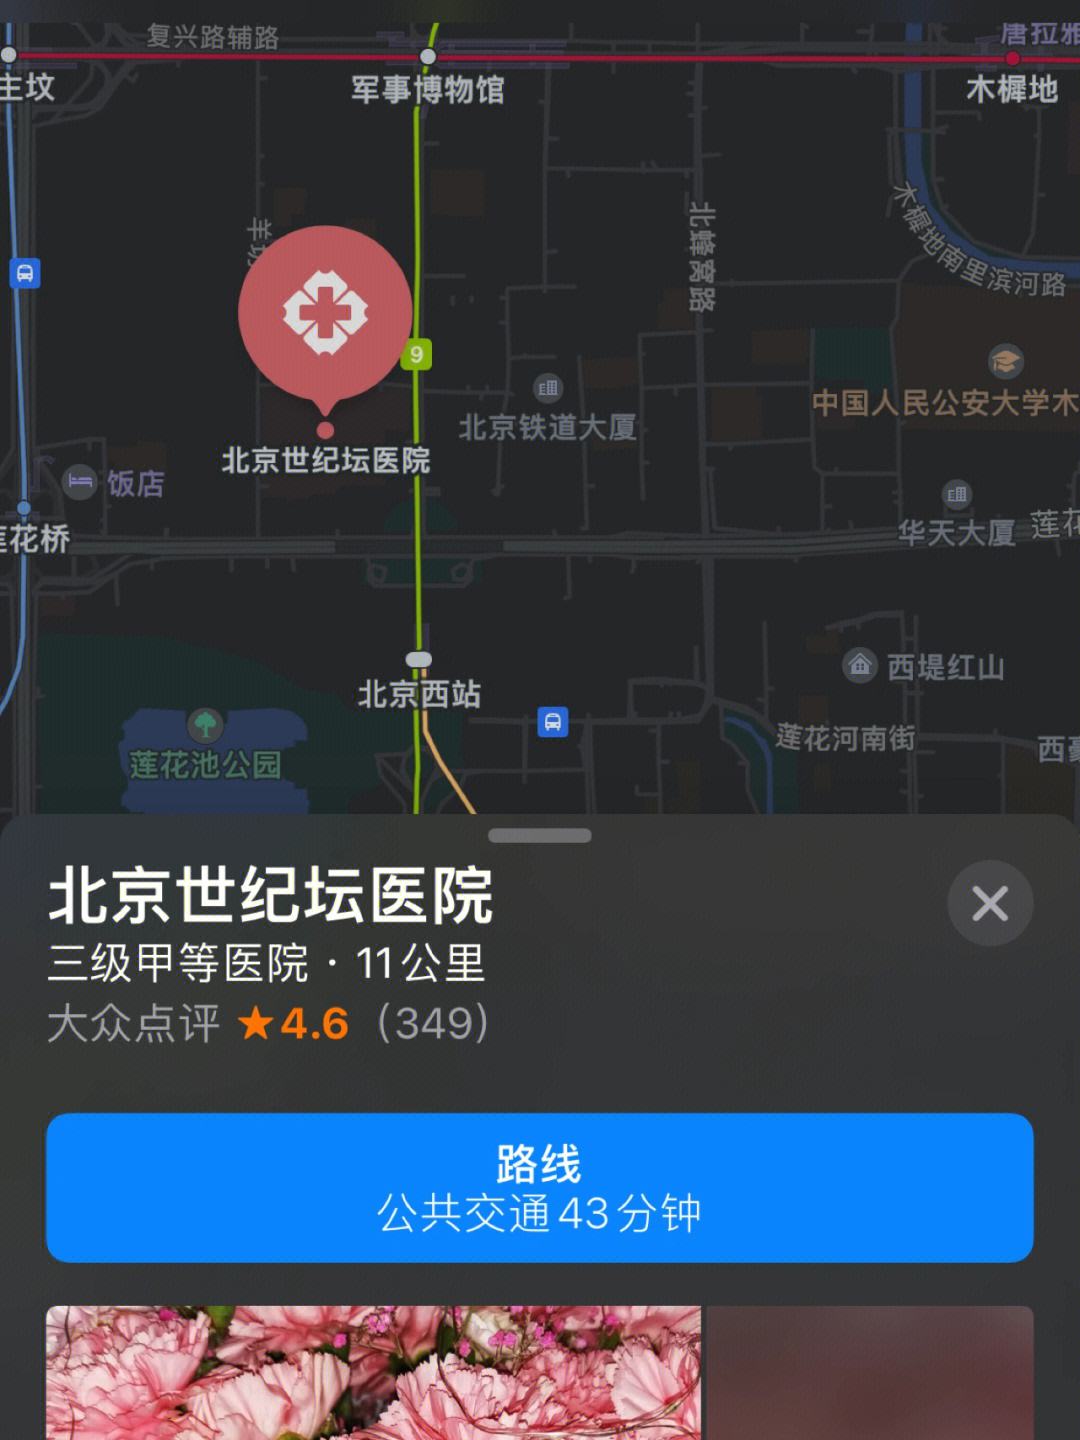 关于北京医院贩子联系方式《提前预约很靠谱》【出号快]的信息